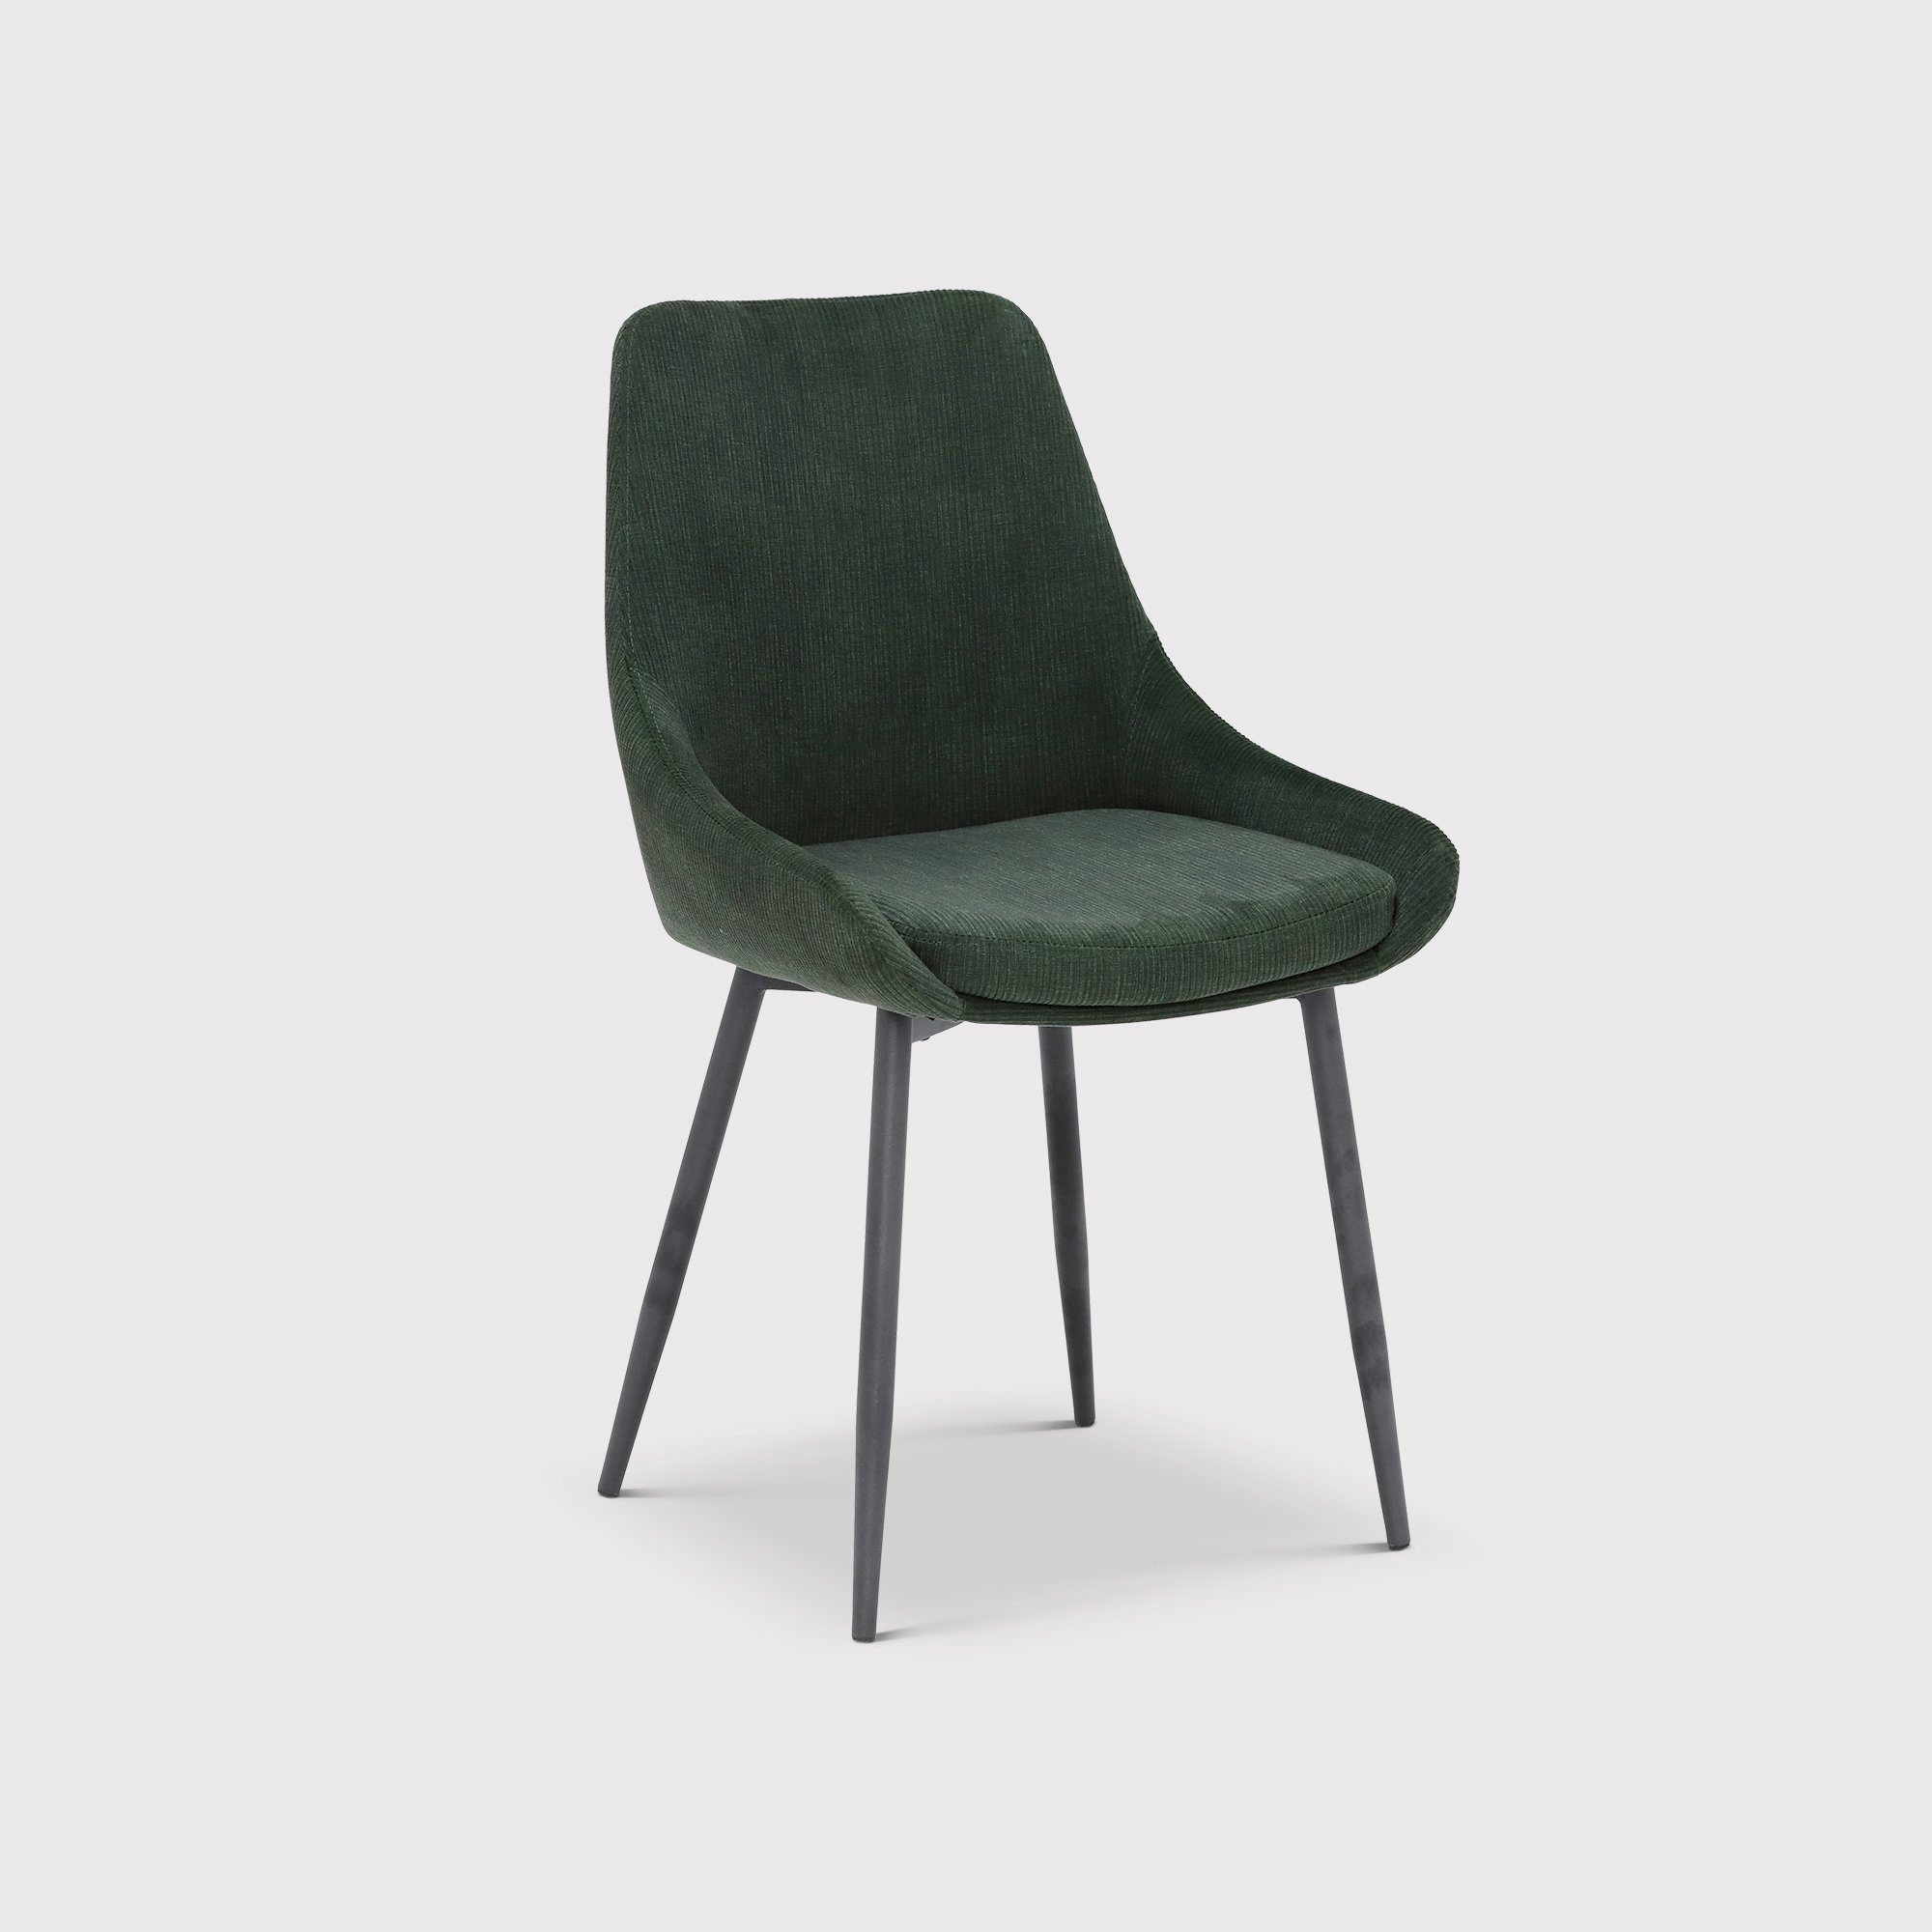 Emmett Dining Chair, Green Fabric | Barker & Stonehouse